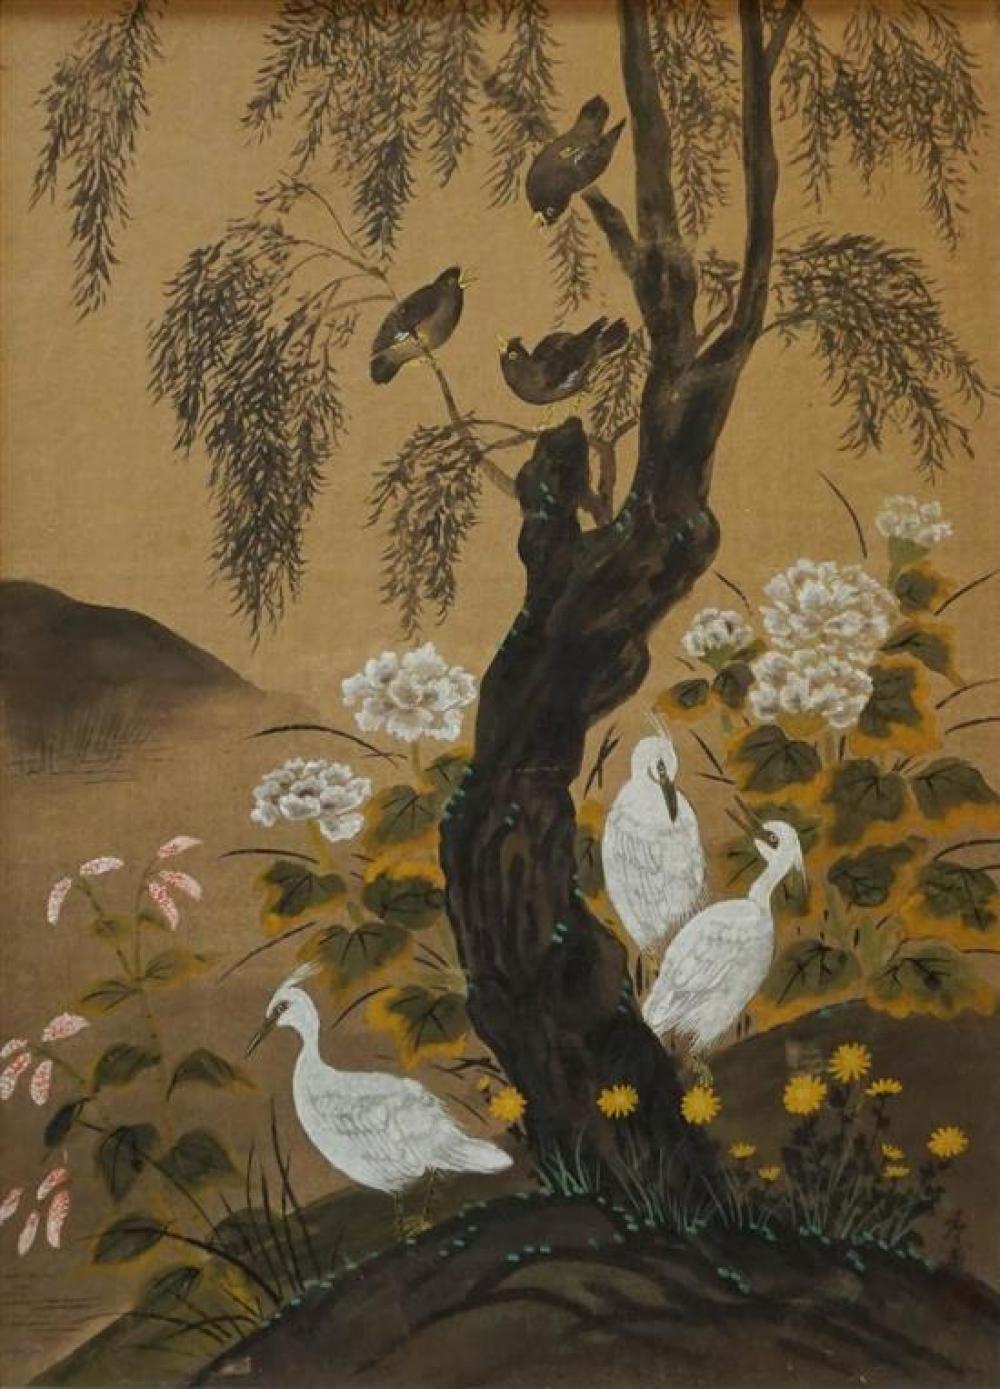 CHINESE, BIRDS SURROUNDING TREE,